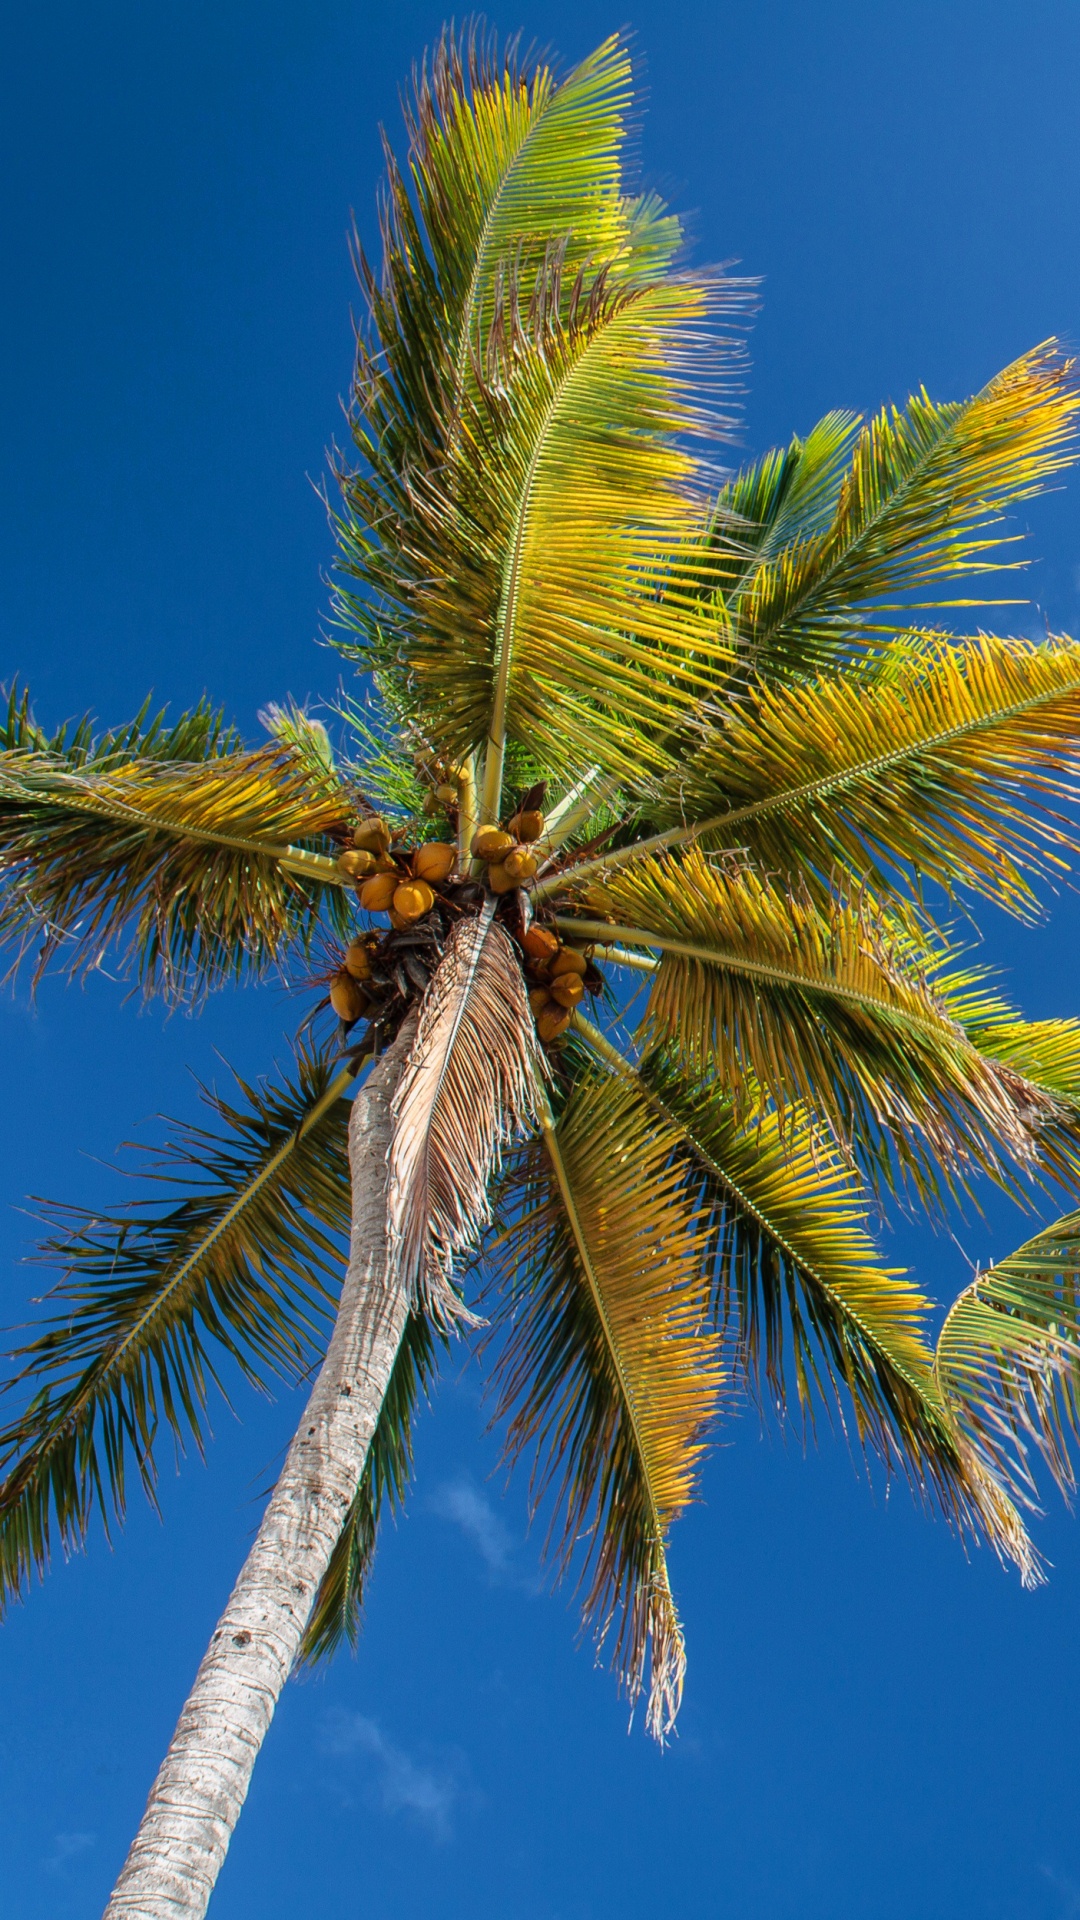 棕榈树, 植被, 热带地区, 绘画, 枣椰树 壁纸 1080x1920 允许